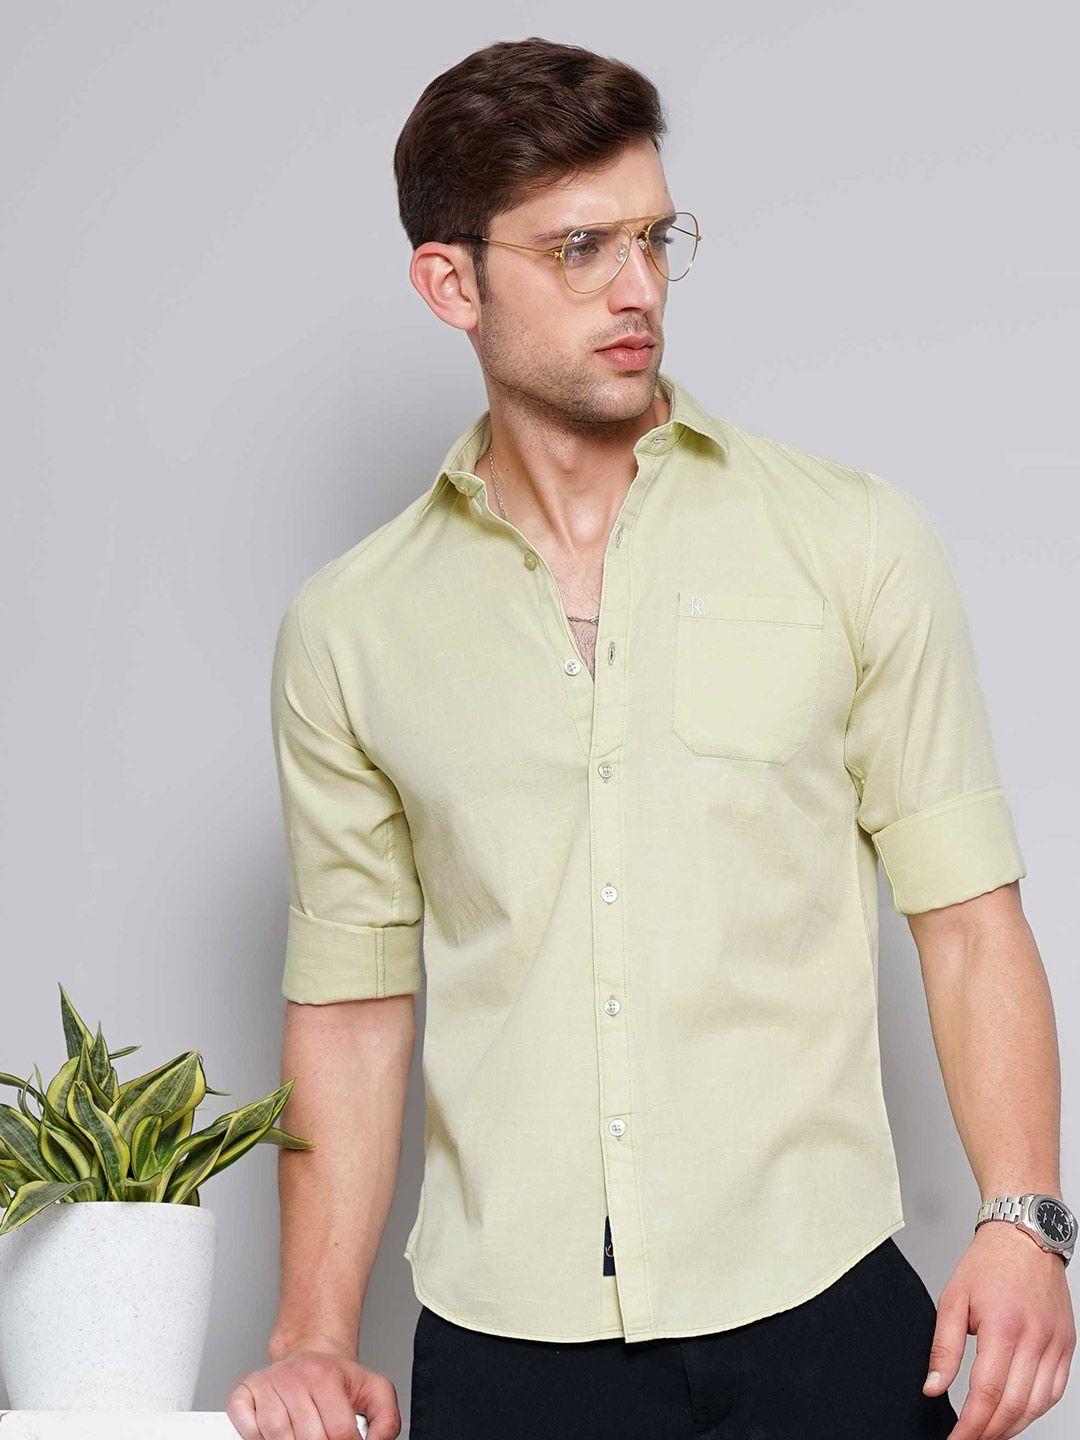 soratia-slim-fit-opaque-cotton-casual-shirt